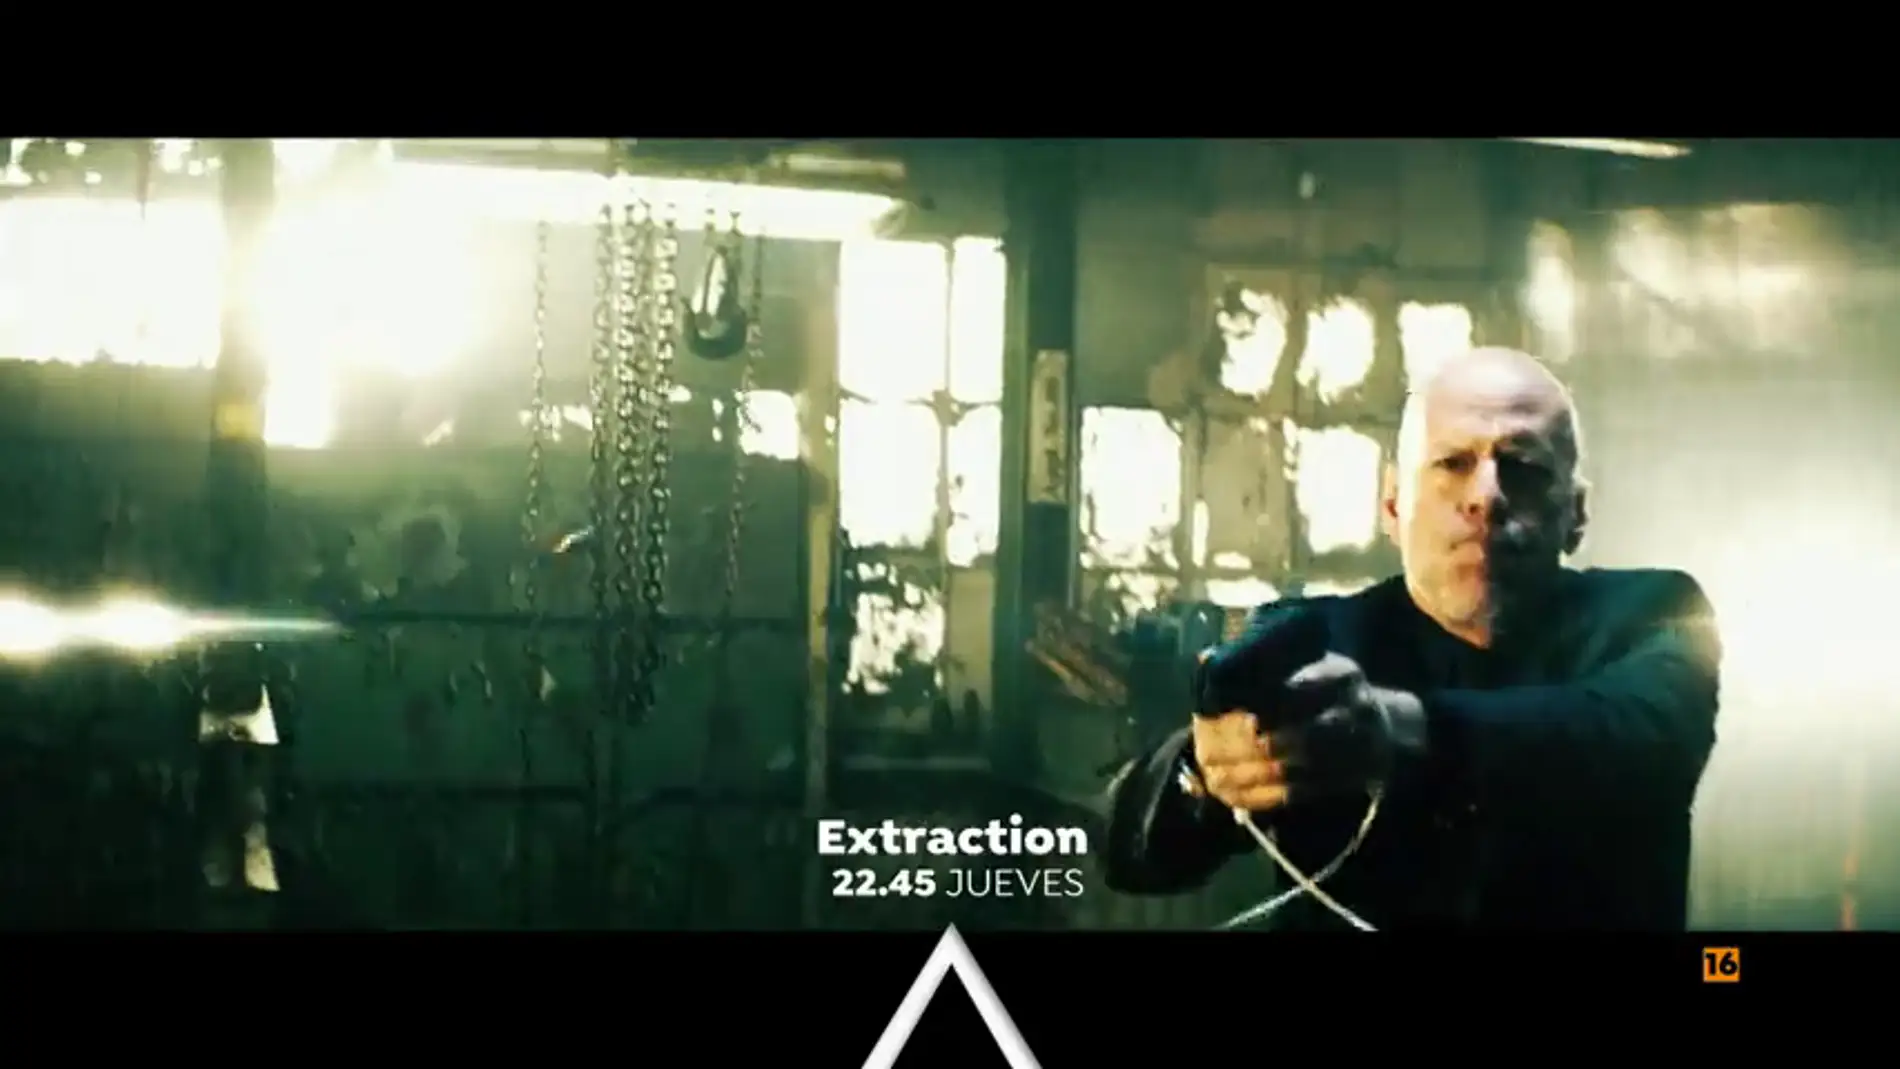 Cine de acción con 'Extraction'